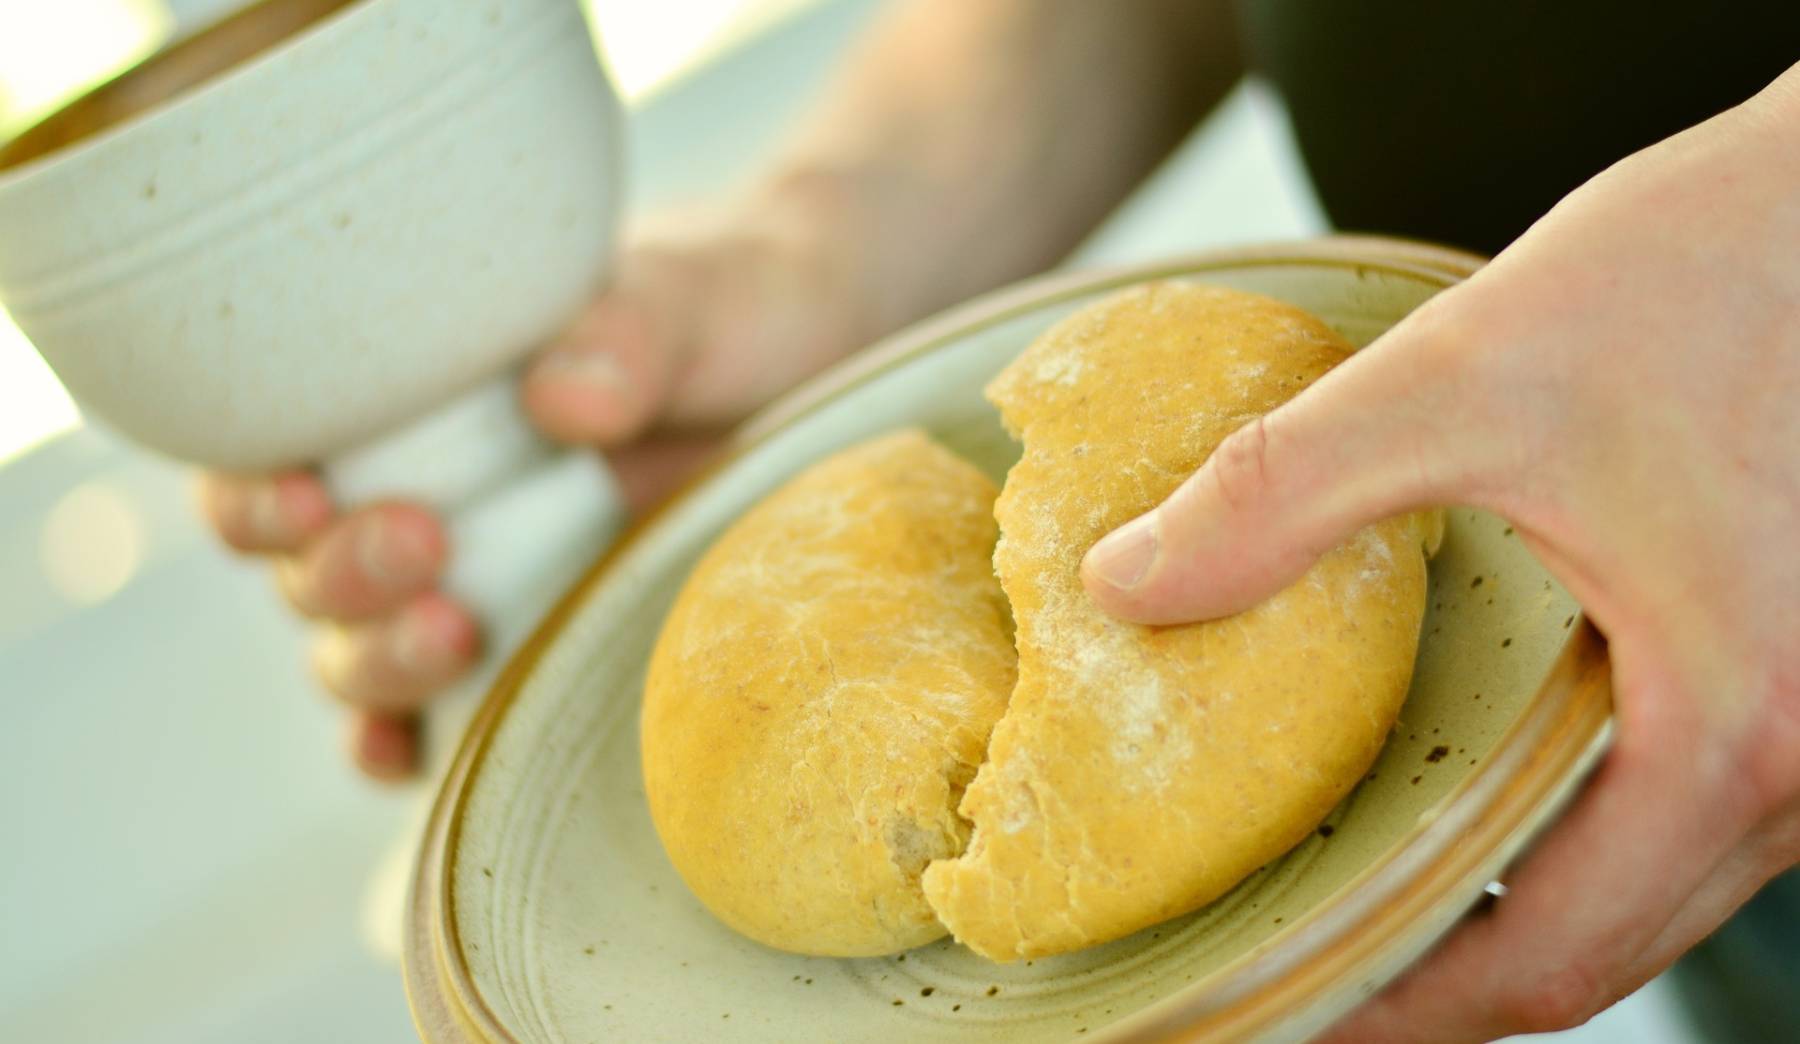 Brot brechen und Liturgie feiern (Foto: concerdesign, pixabay.com)